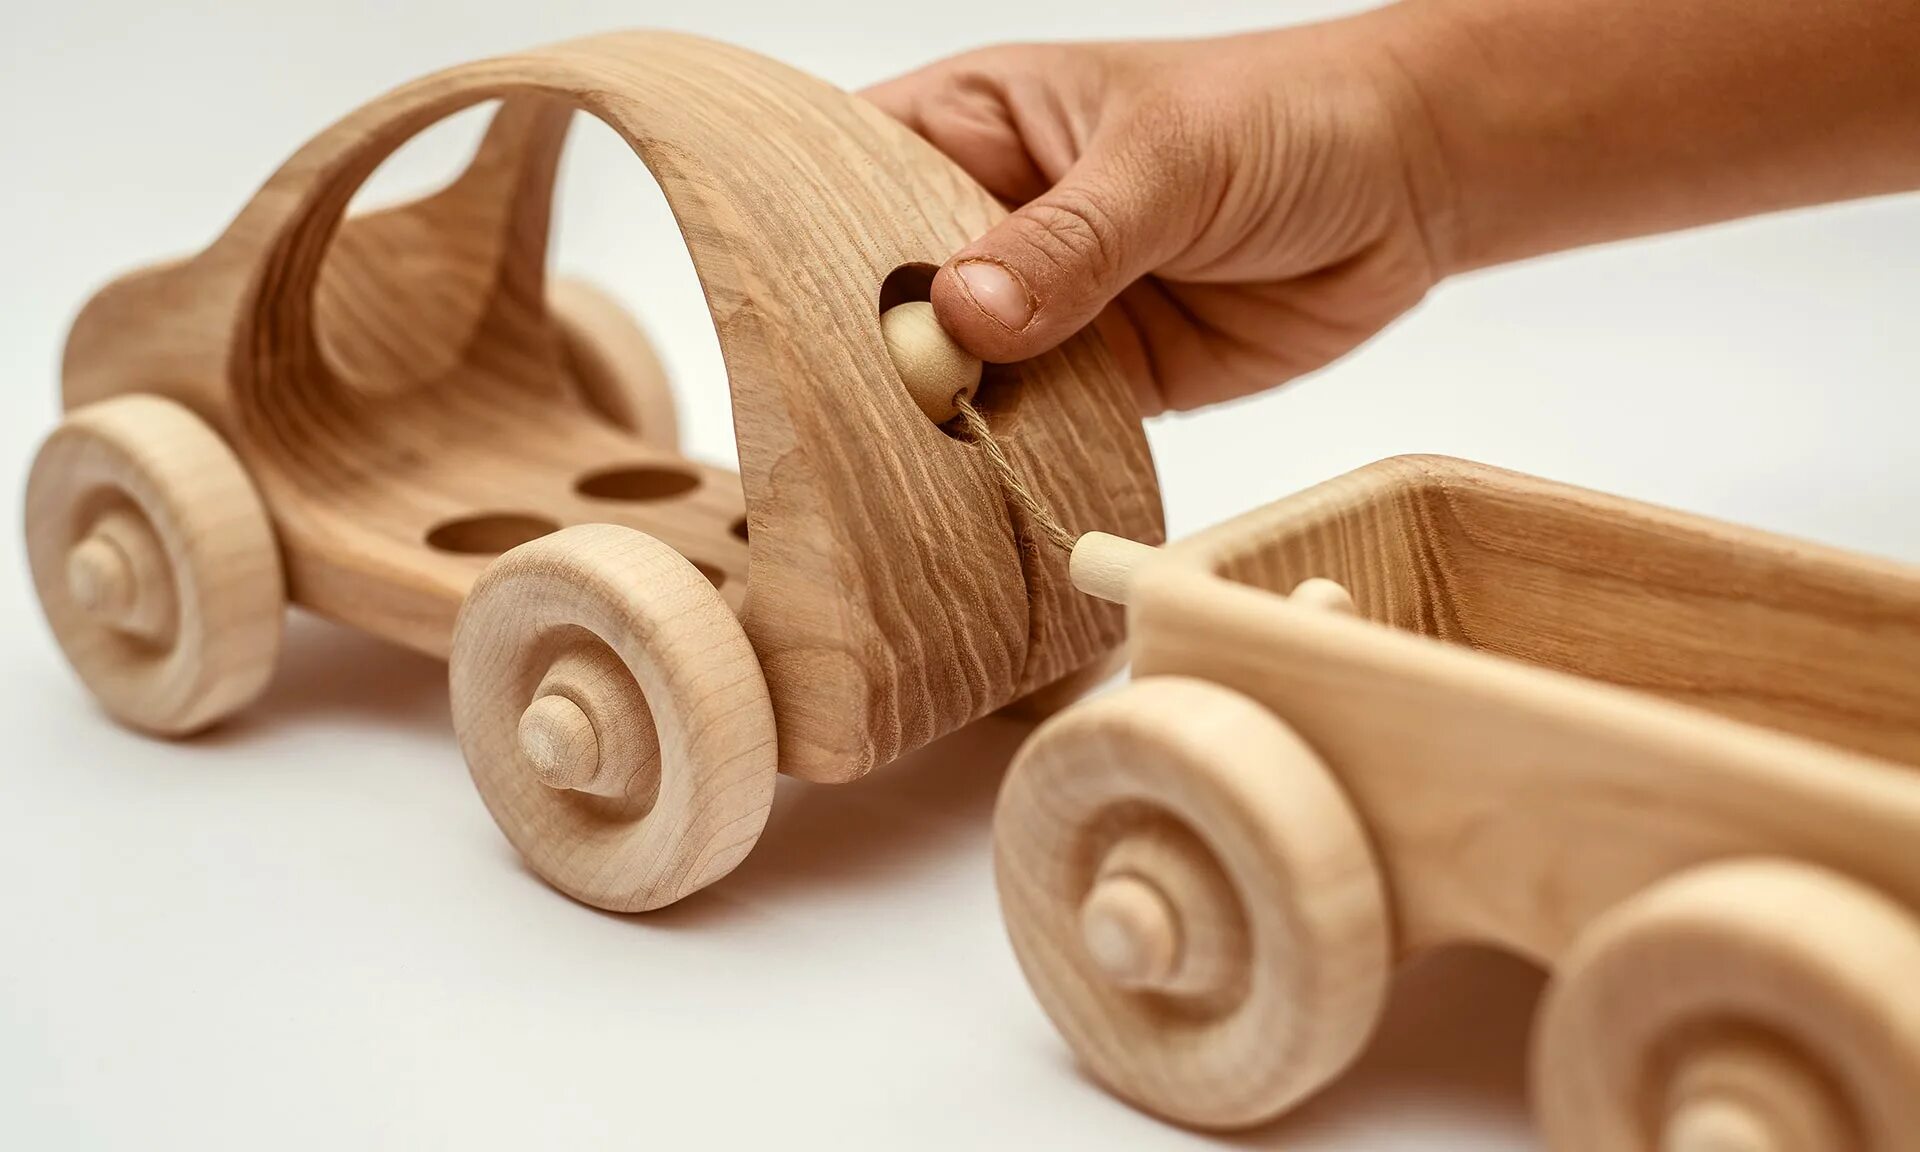 И т д деревянная. Деревянные игрушки. Изделия из древесины. Деревянные изделия для детей. Игрушки из древесины.